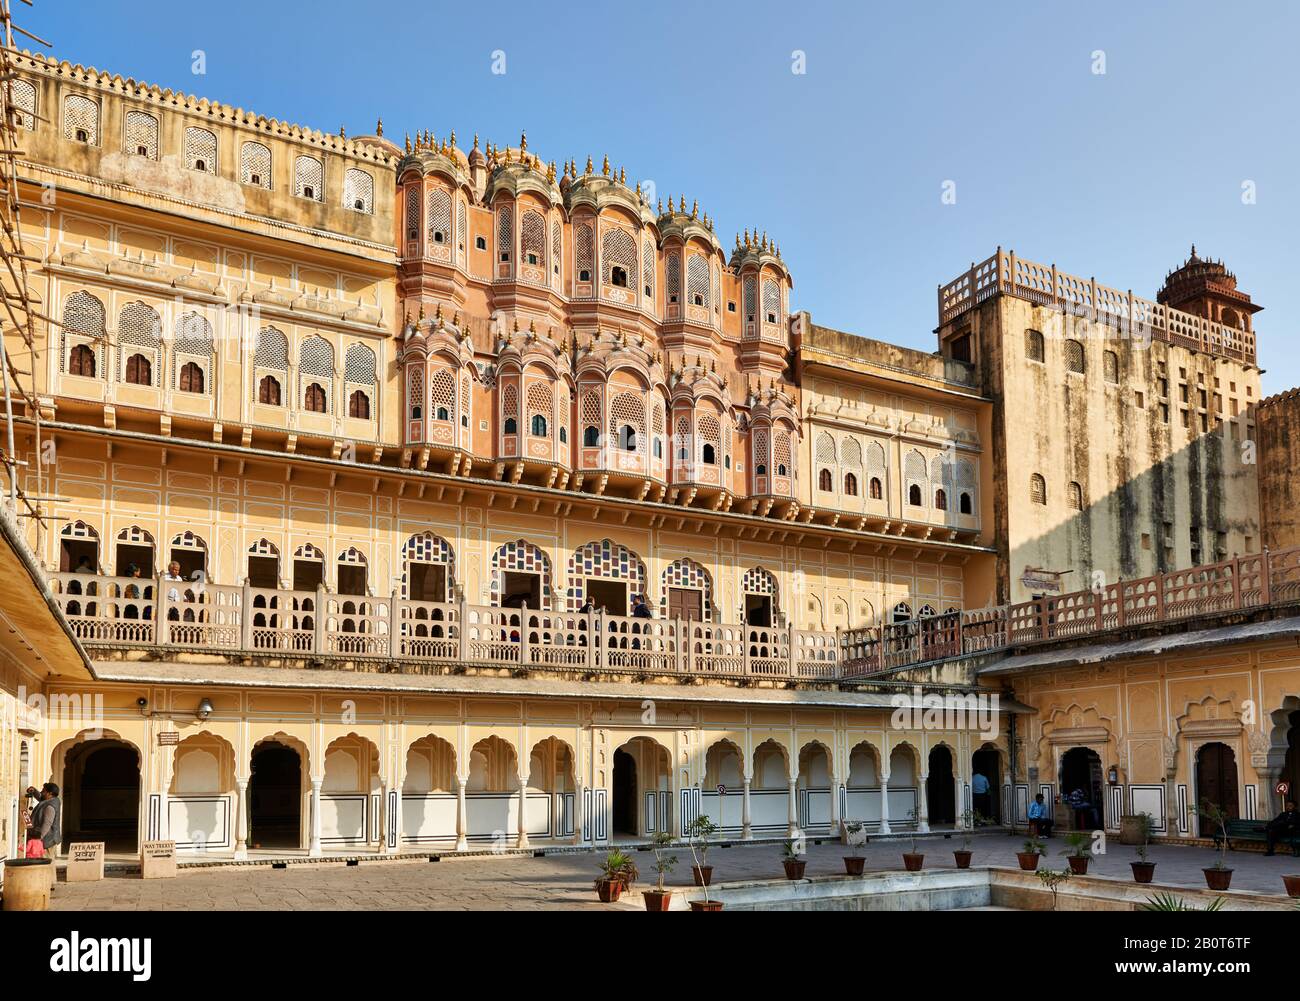 Parte trasera del Palacio de los vientos, Hawa Mahal, Jaipur, Rajasthan, India Foto de stock